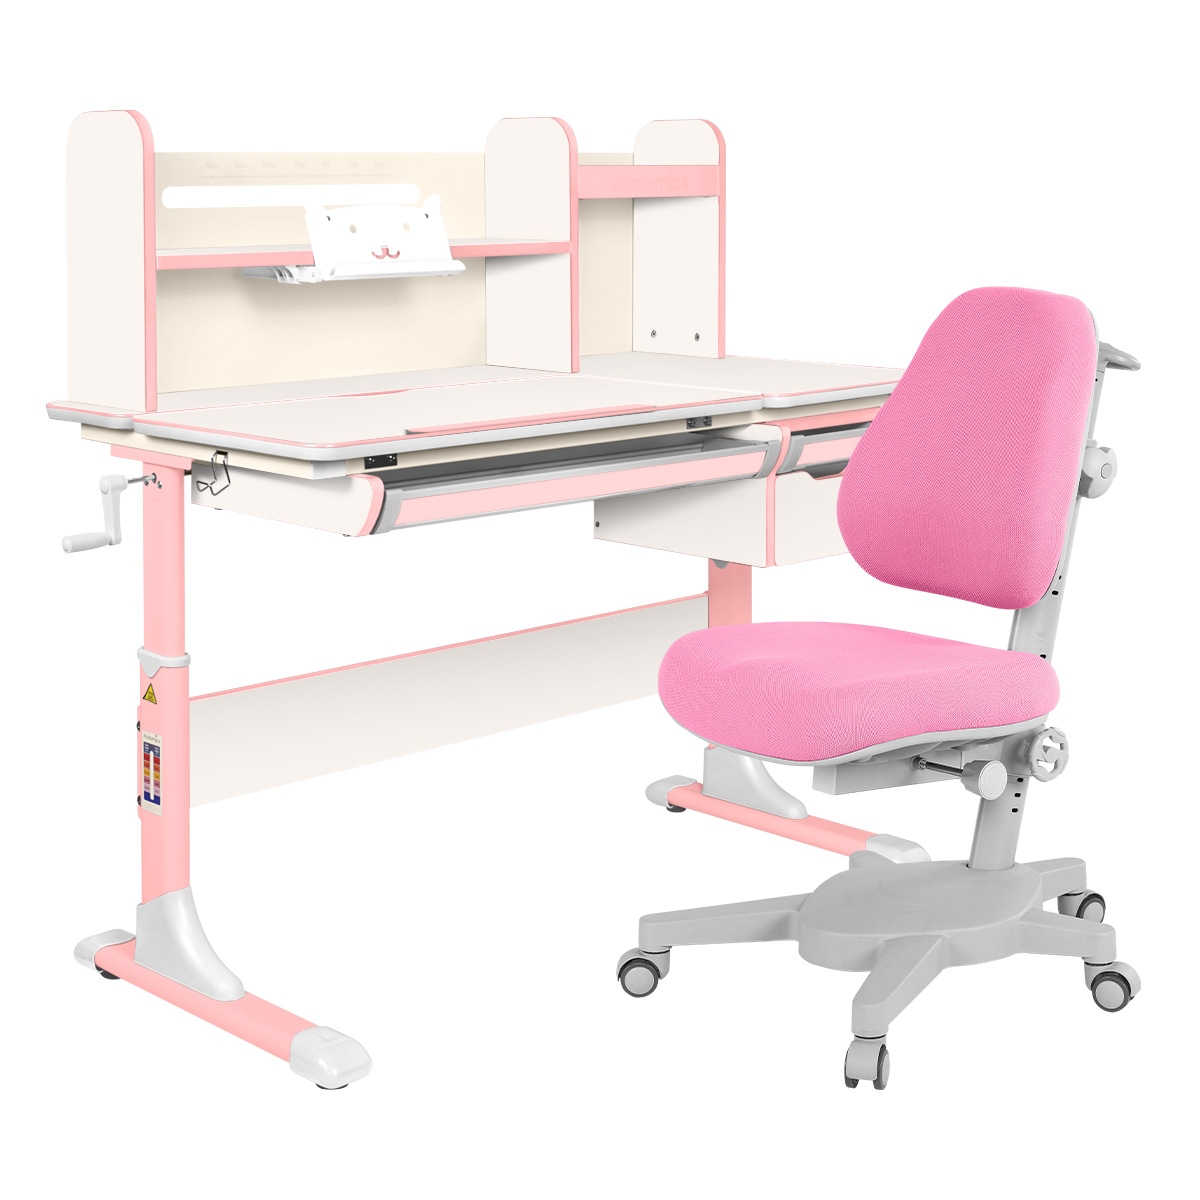 Комплект Anatomica парта Genius белый/розовый с розовым креслом Armata комплект anatomica парта genius клен розовый с розовым креслом figra